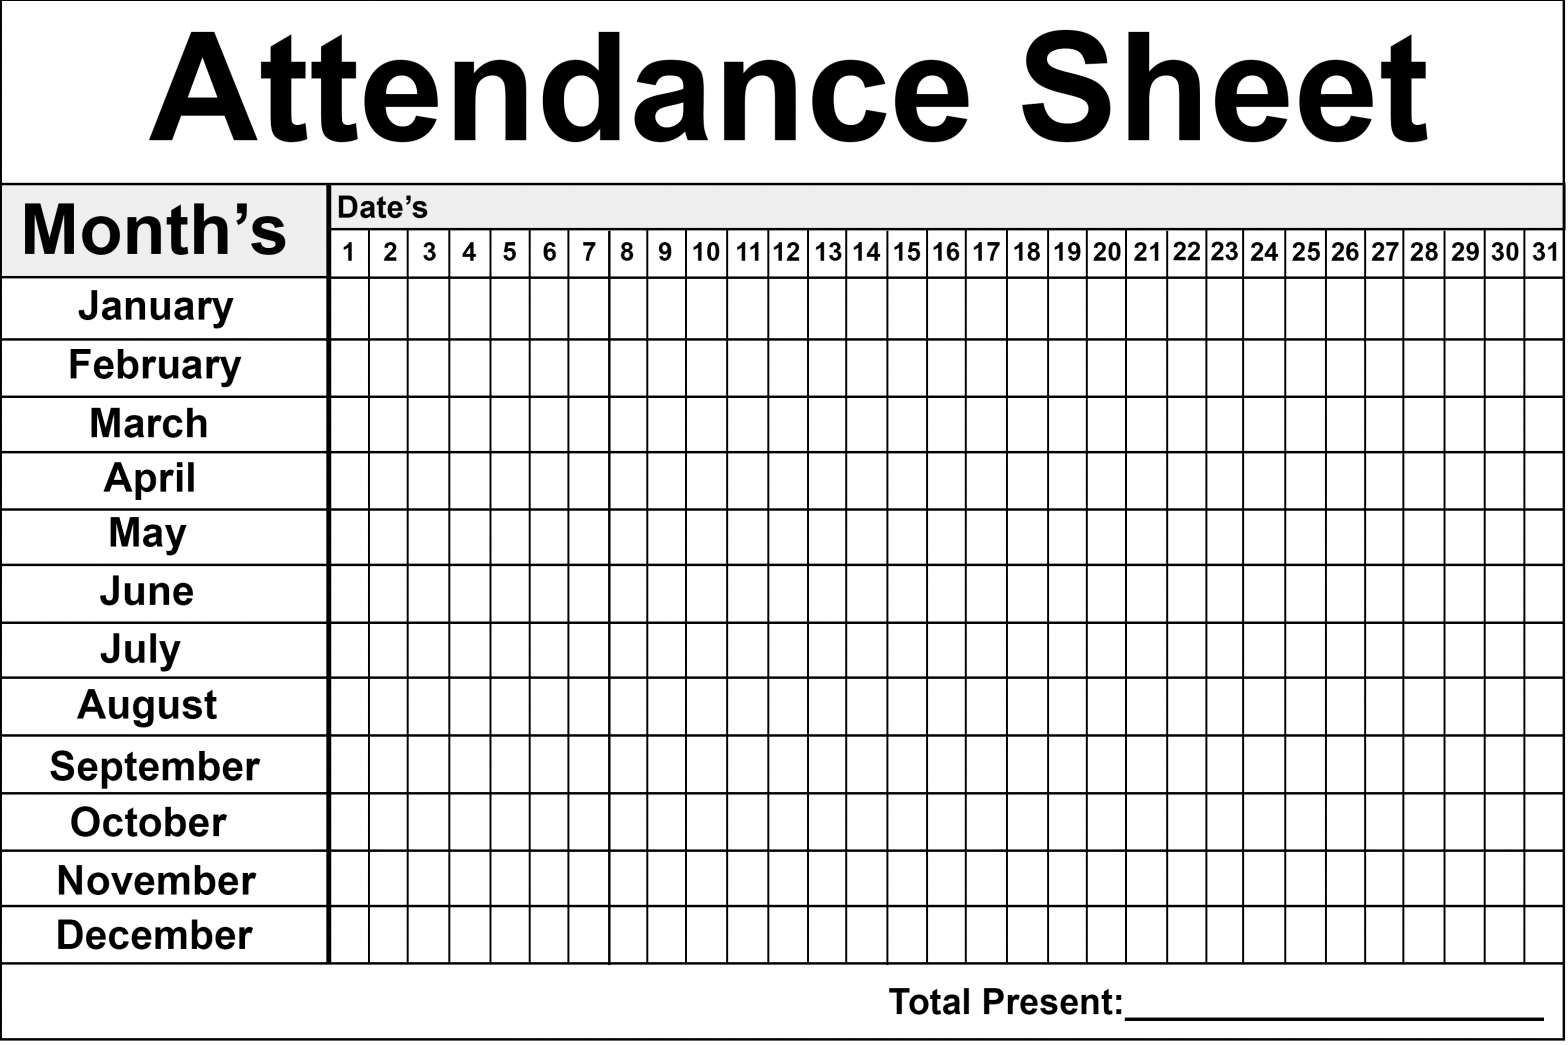 Employee Attendance Sheet | Attendance Sheet, Printable-Free Printable Employee Attendance Forms 2021